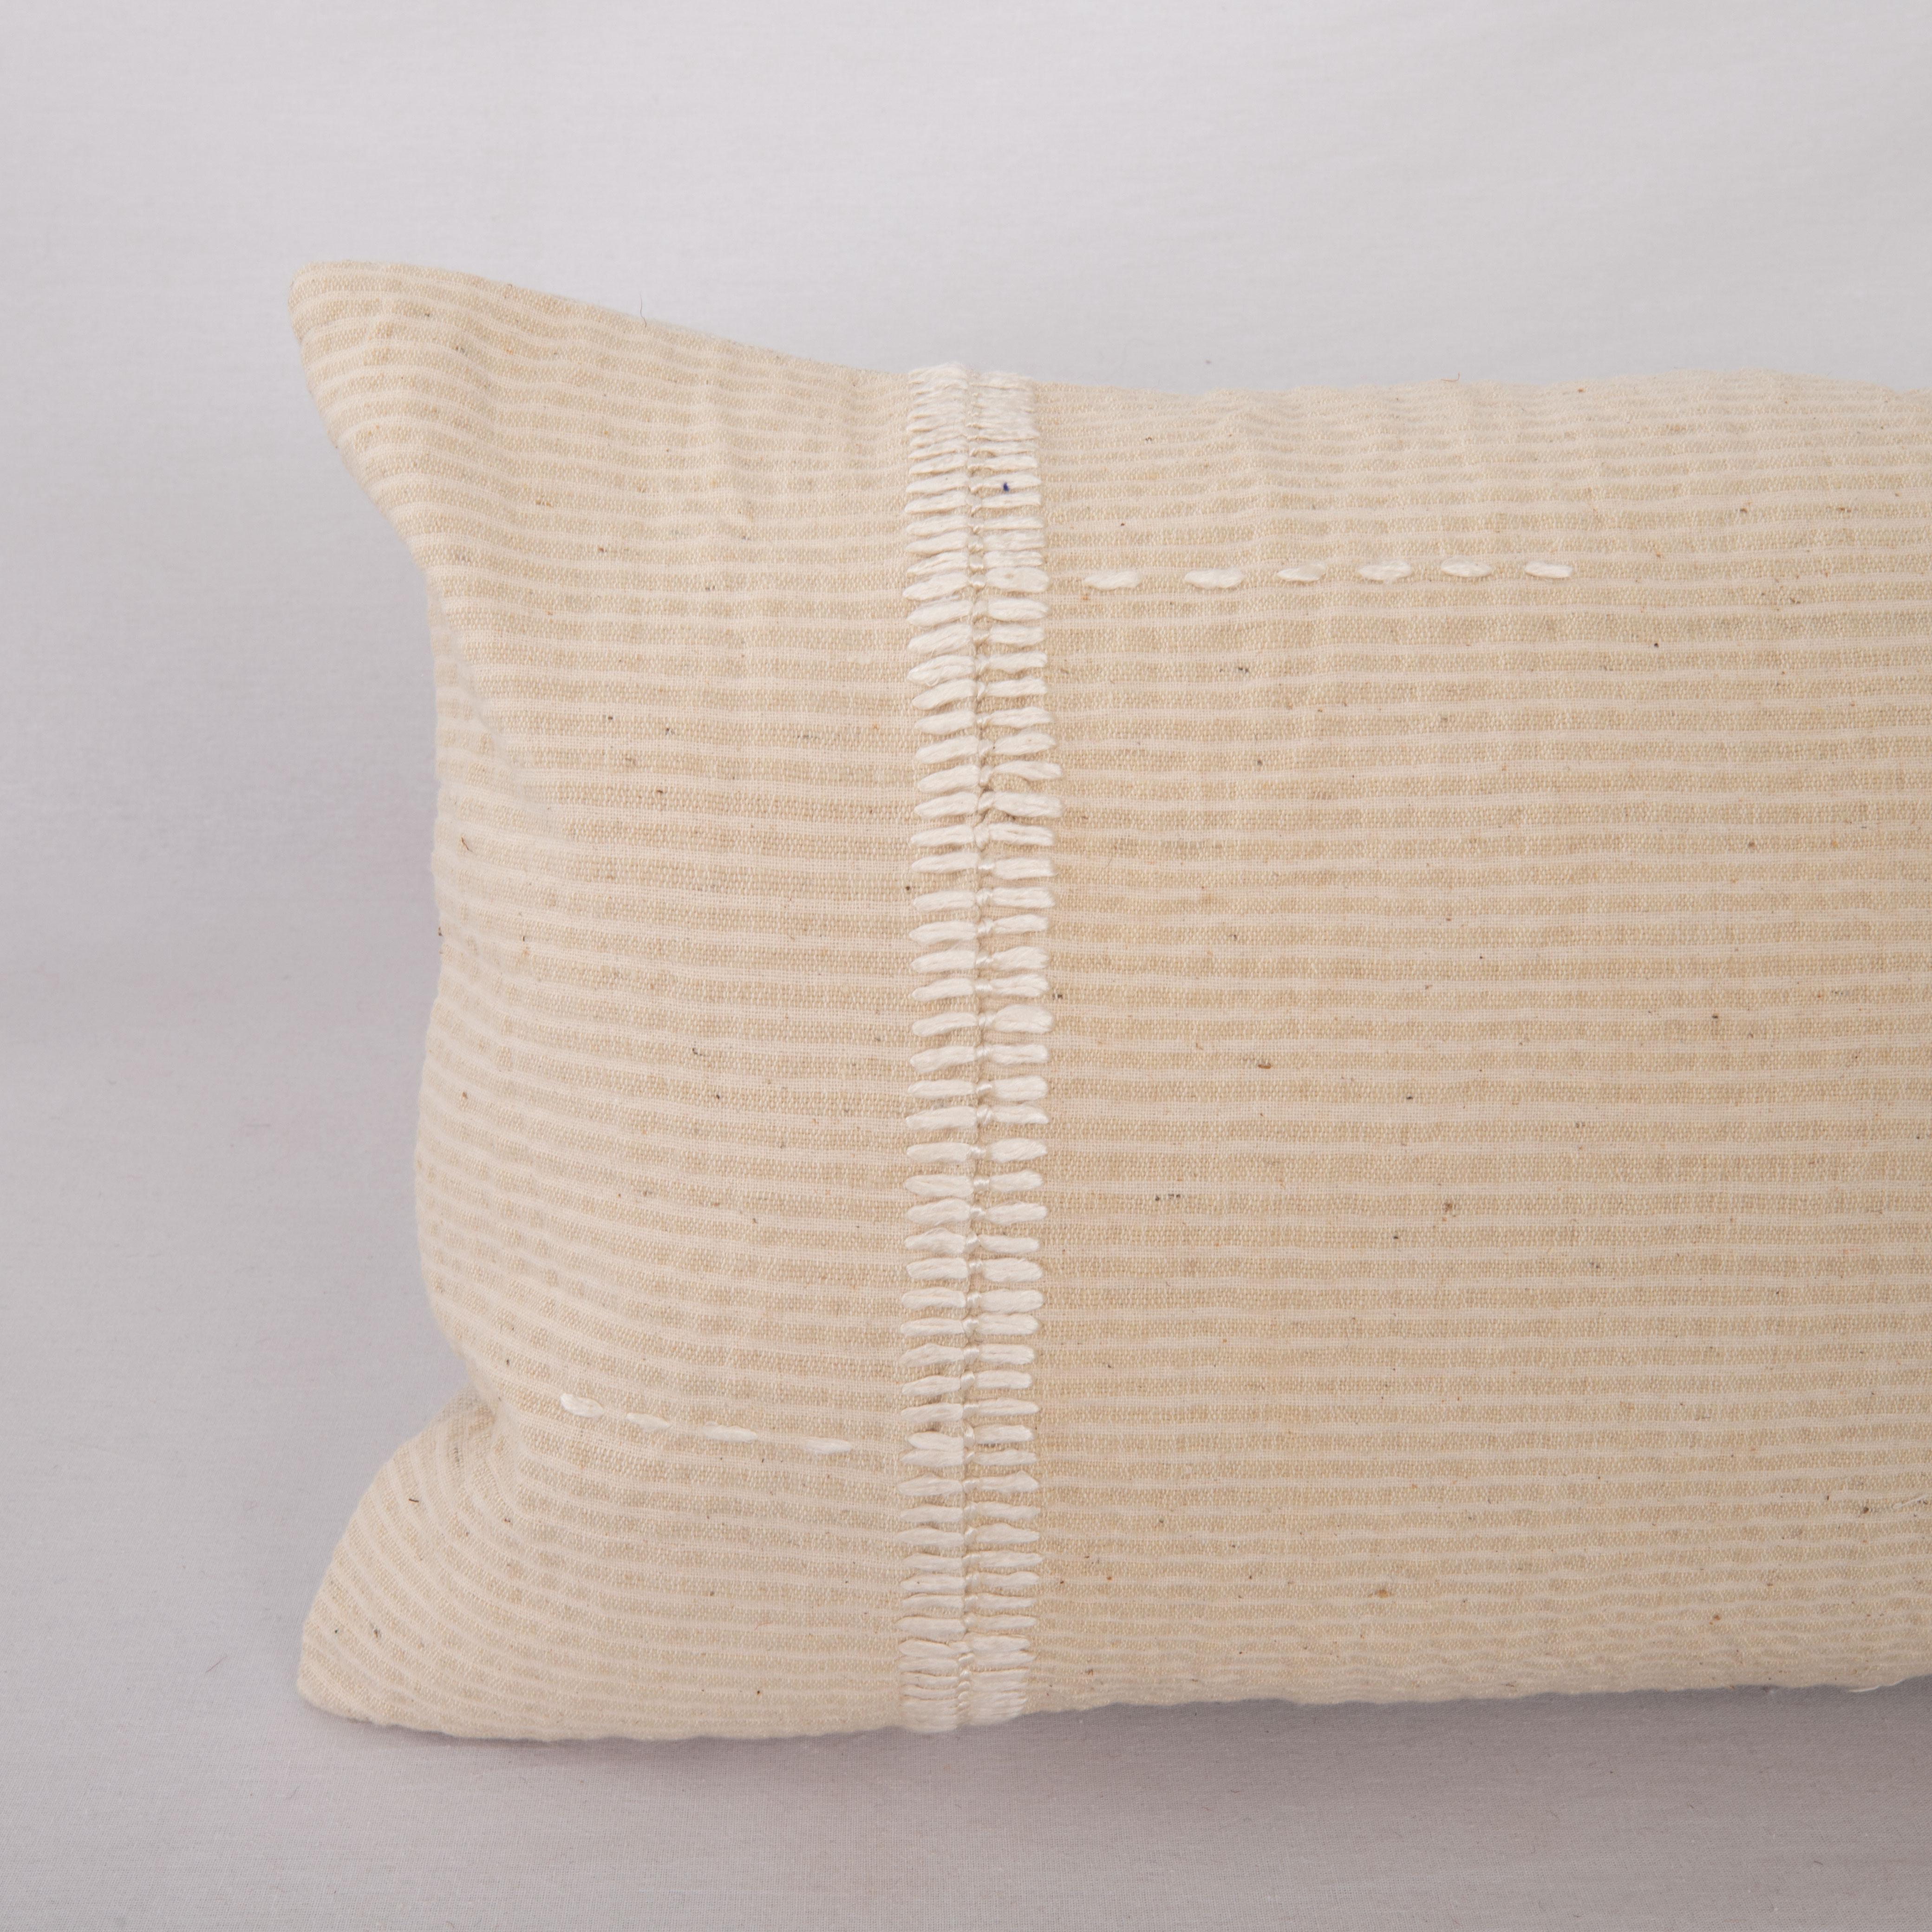 Kilim Mid 20th C. Pillow Cover Made from Vintage Anatolian Covers (housse de coussin du milieu du 20e siècle fabriquée à partir de couvertures anatoliennes d'époque) en vente